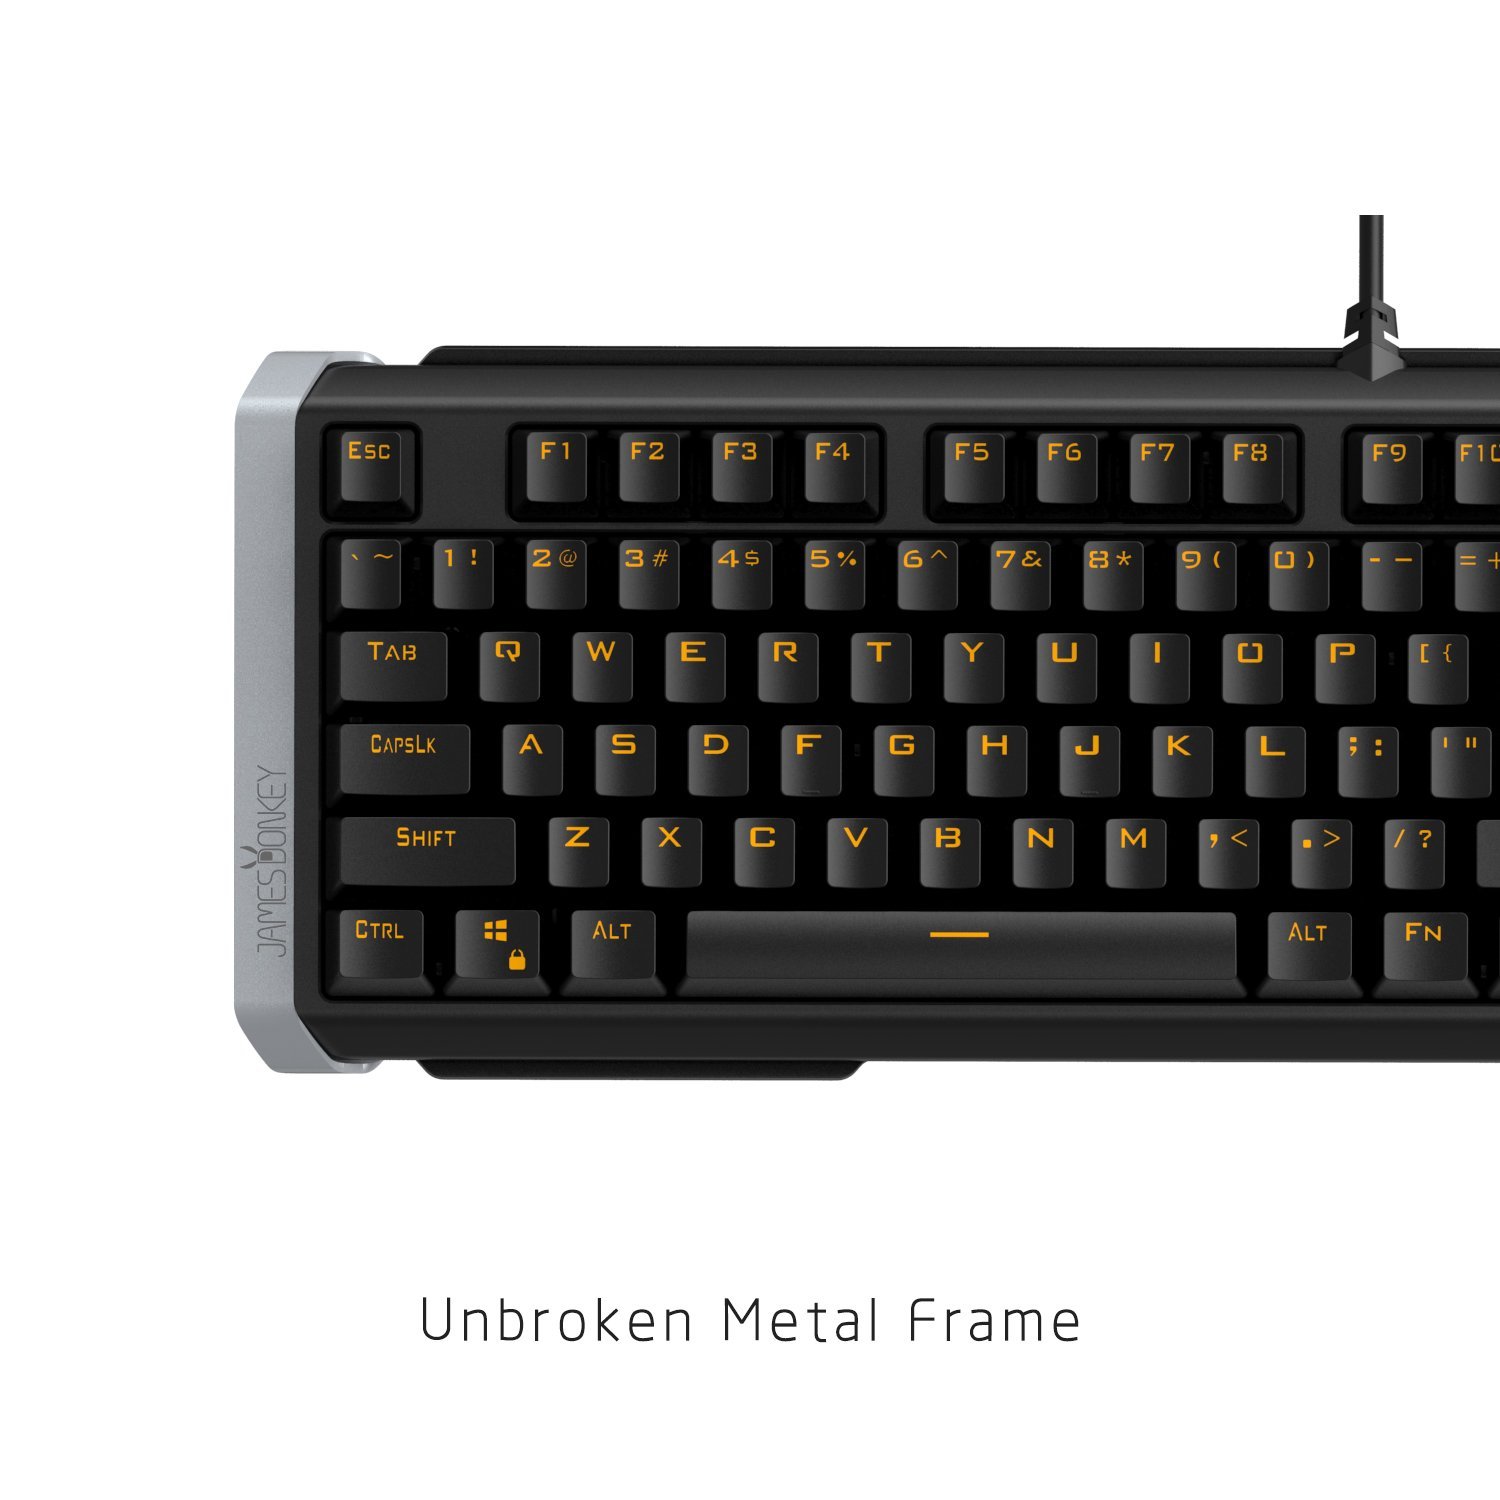 Amazon.com: James Donkey Mechanical Gaming Keyboard,Yellow LED ...